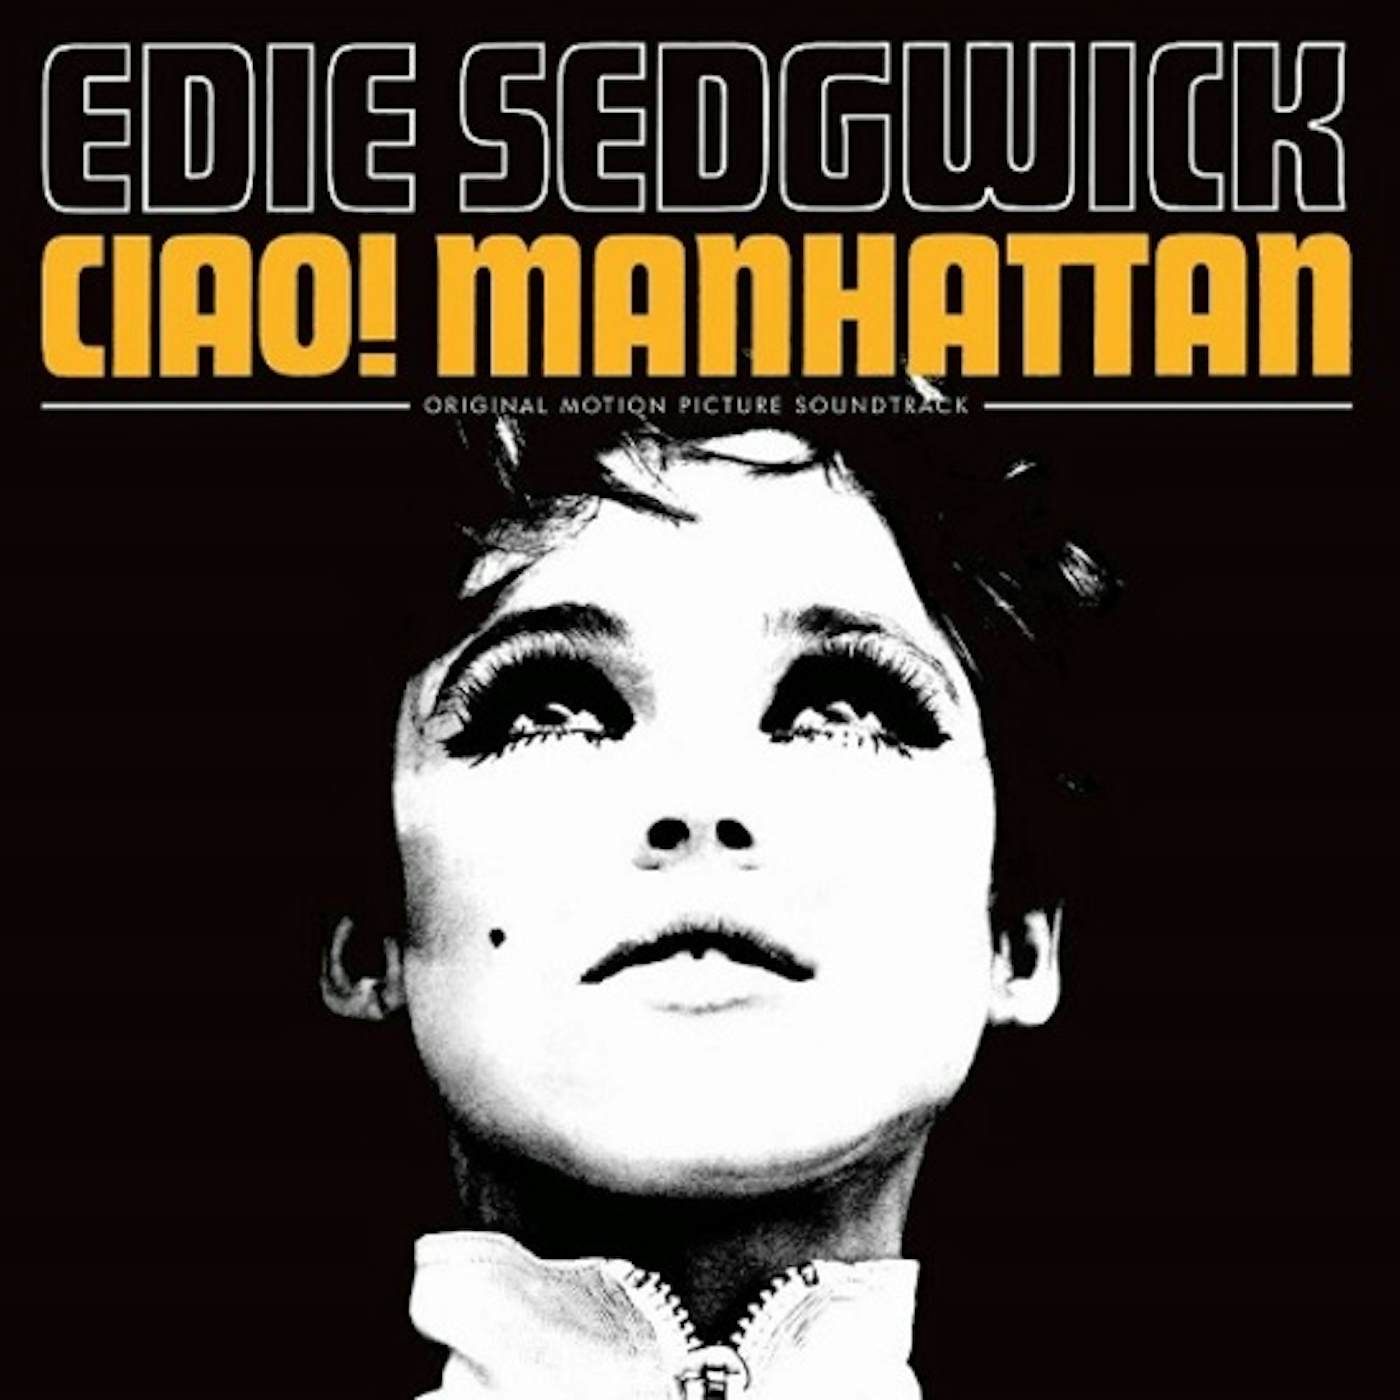 Ciao! Manhattan CIAO MANHATTAN / Original Soundtrack CD